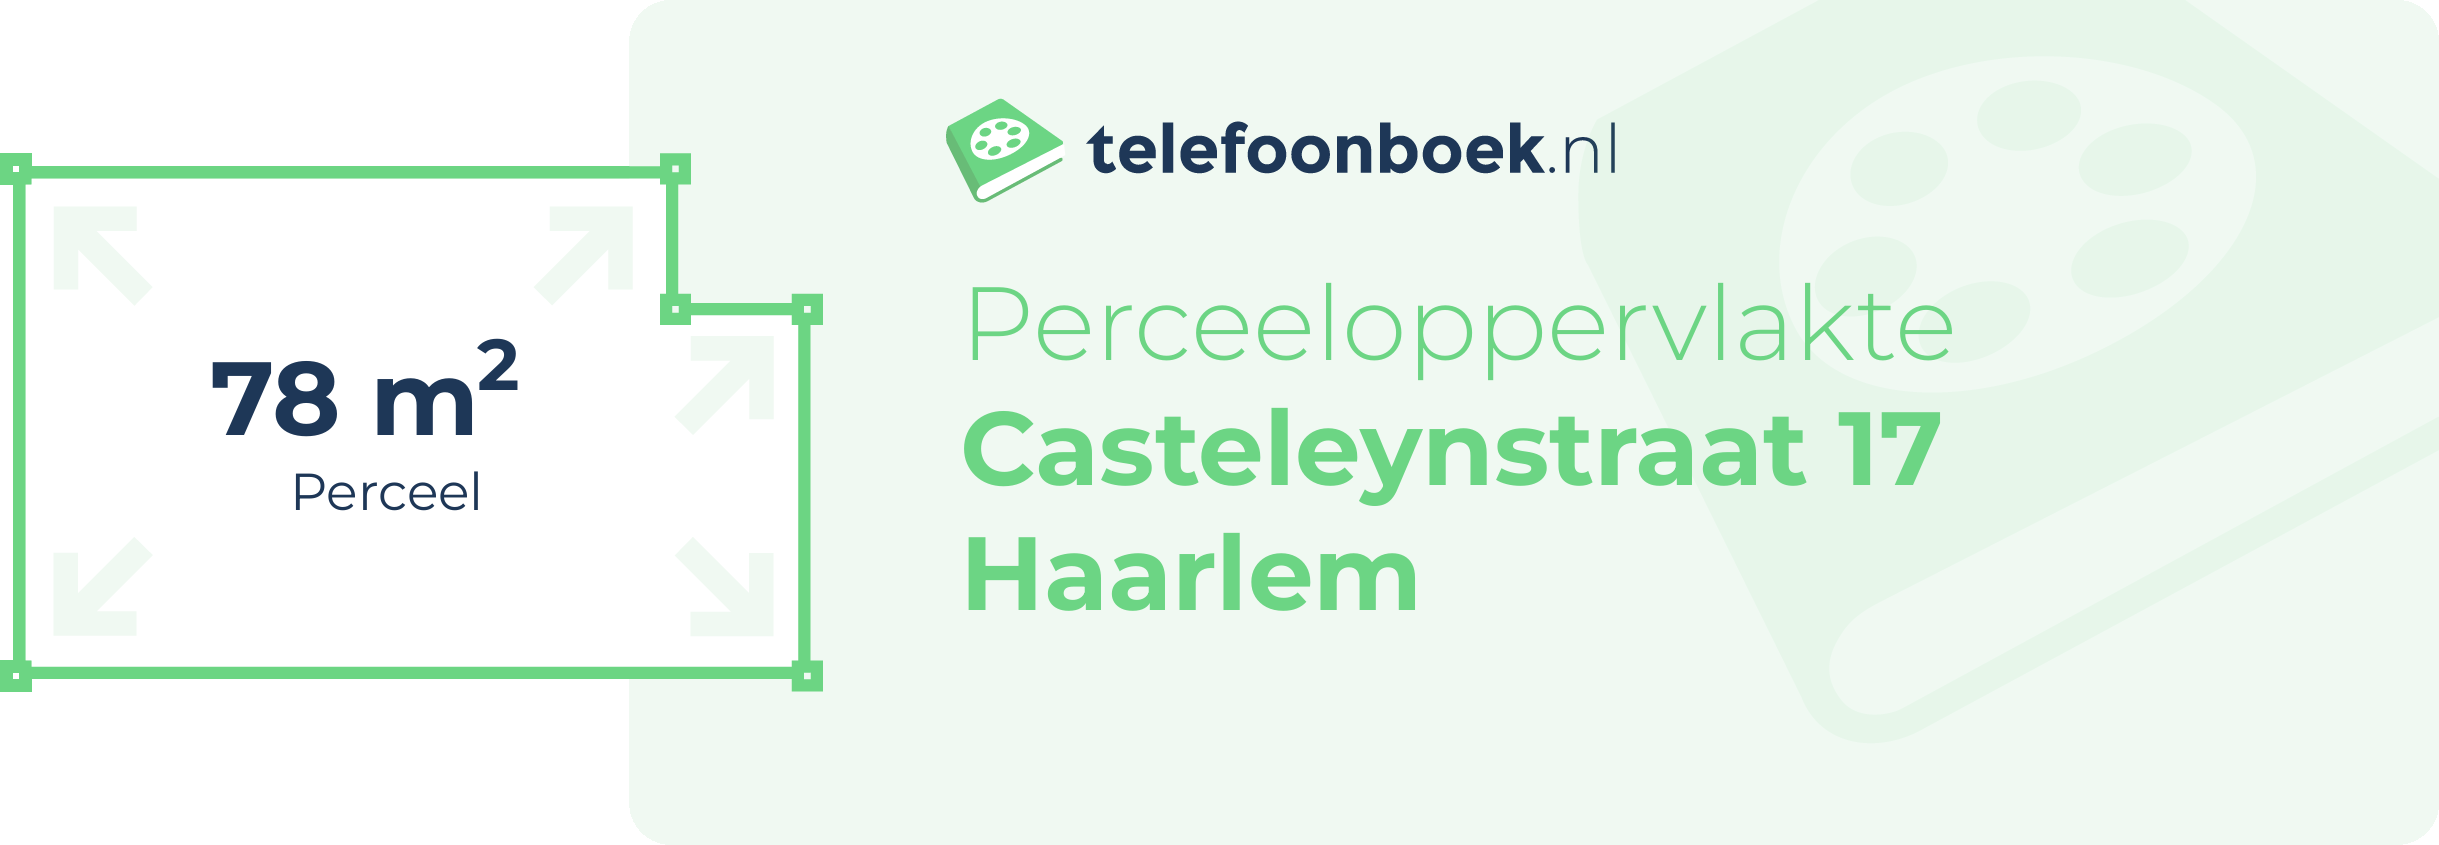 Perceeloppervlakte Casteleynstraat 17 Haarlem